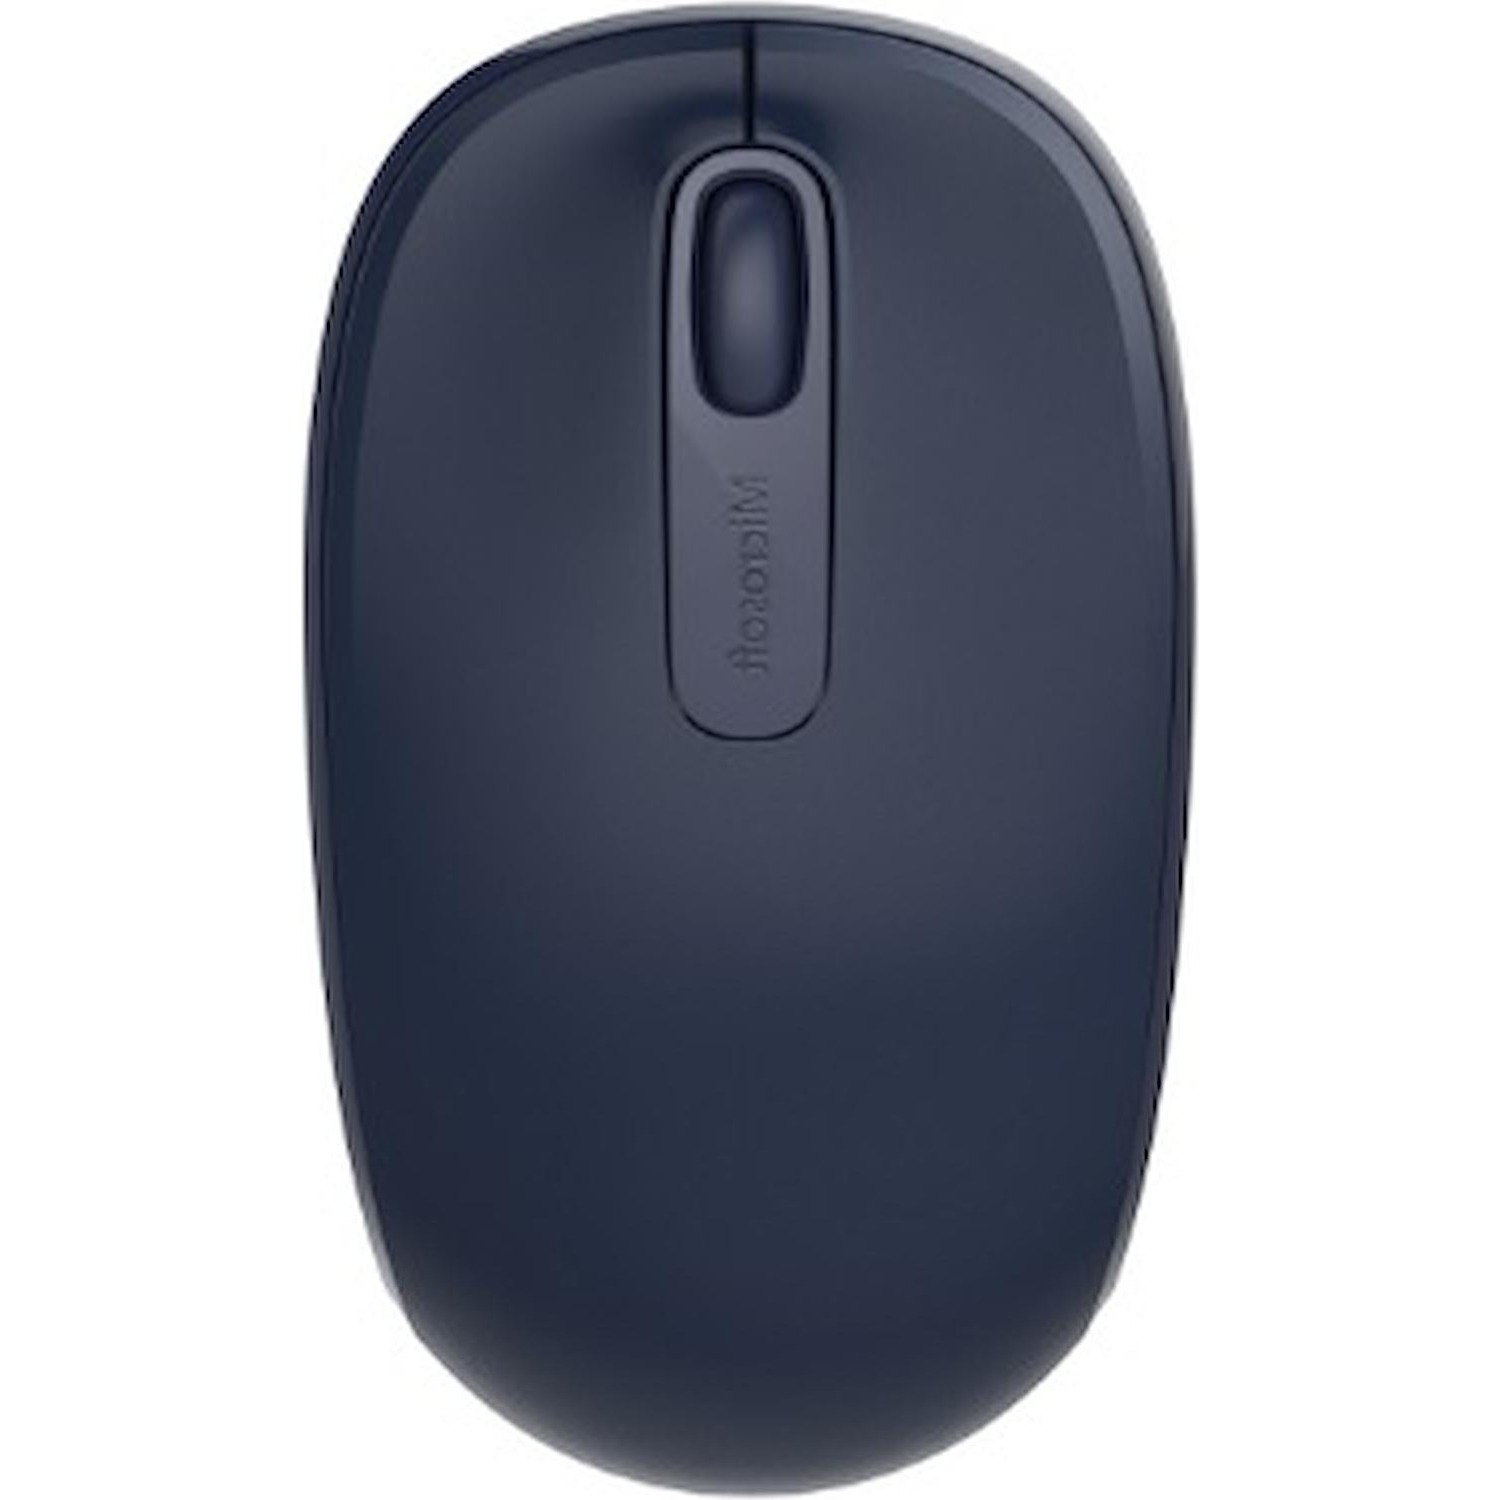 Immagine per Mouse Microsoft mobile 1850 blu da DIMOStore